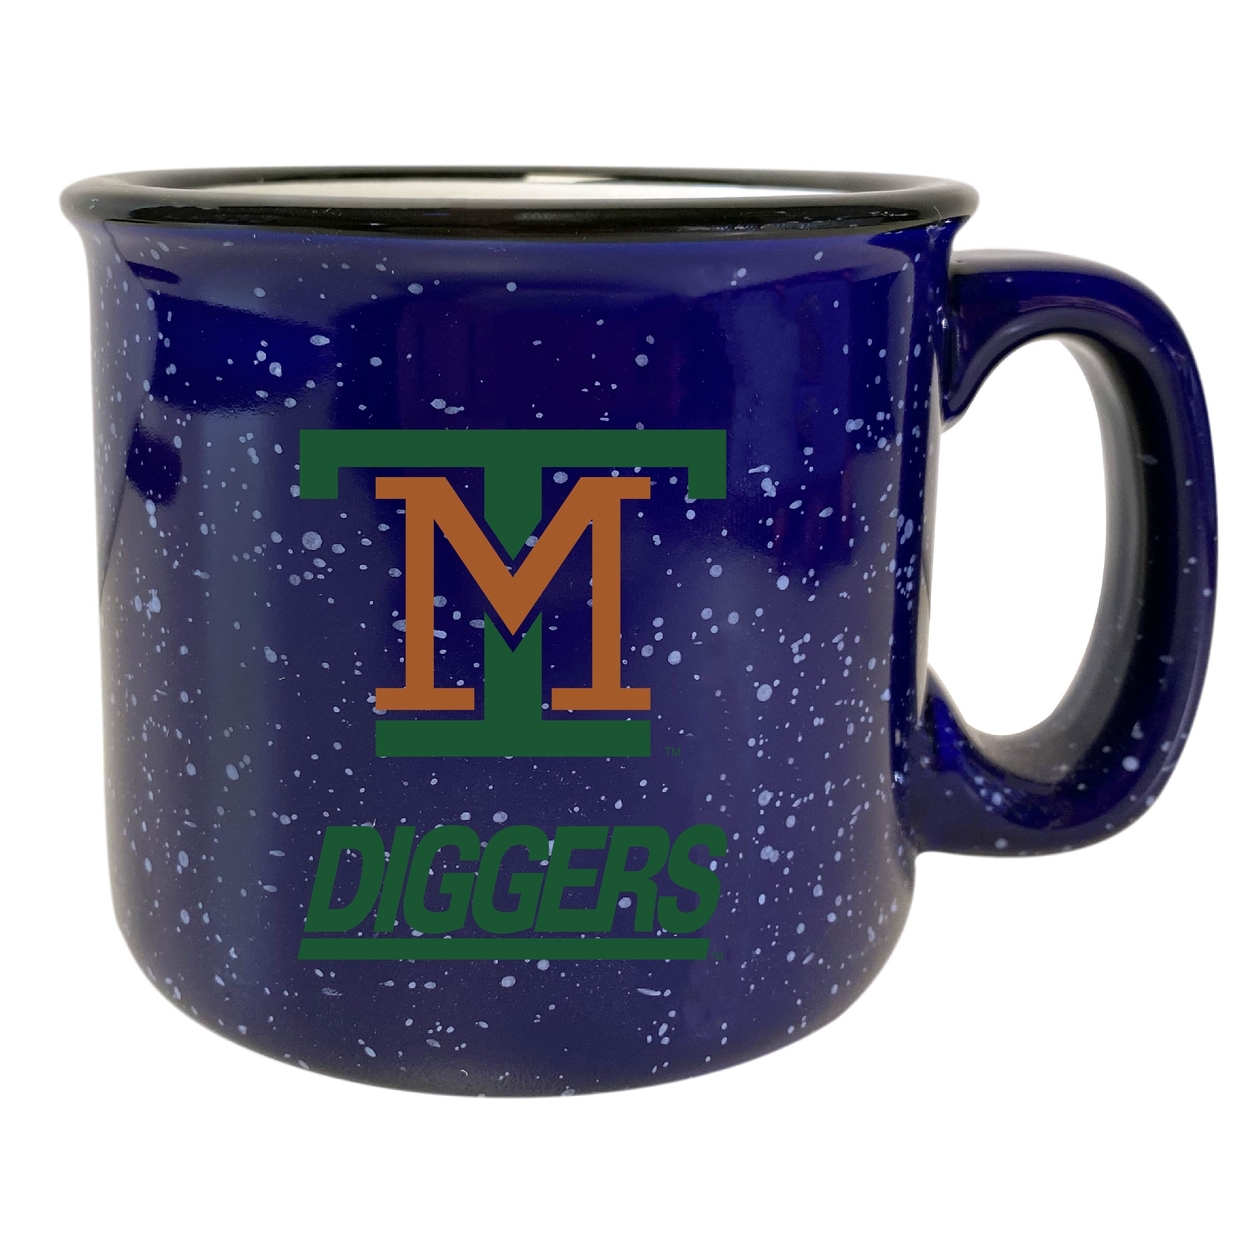 Montana Tech Speckled Ceramic Camper Coffee Mug - Choose Your Color - White